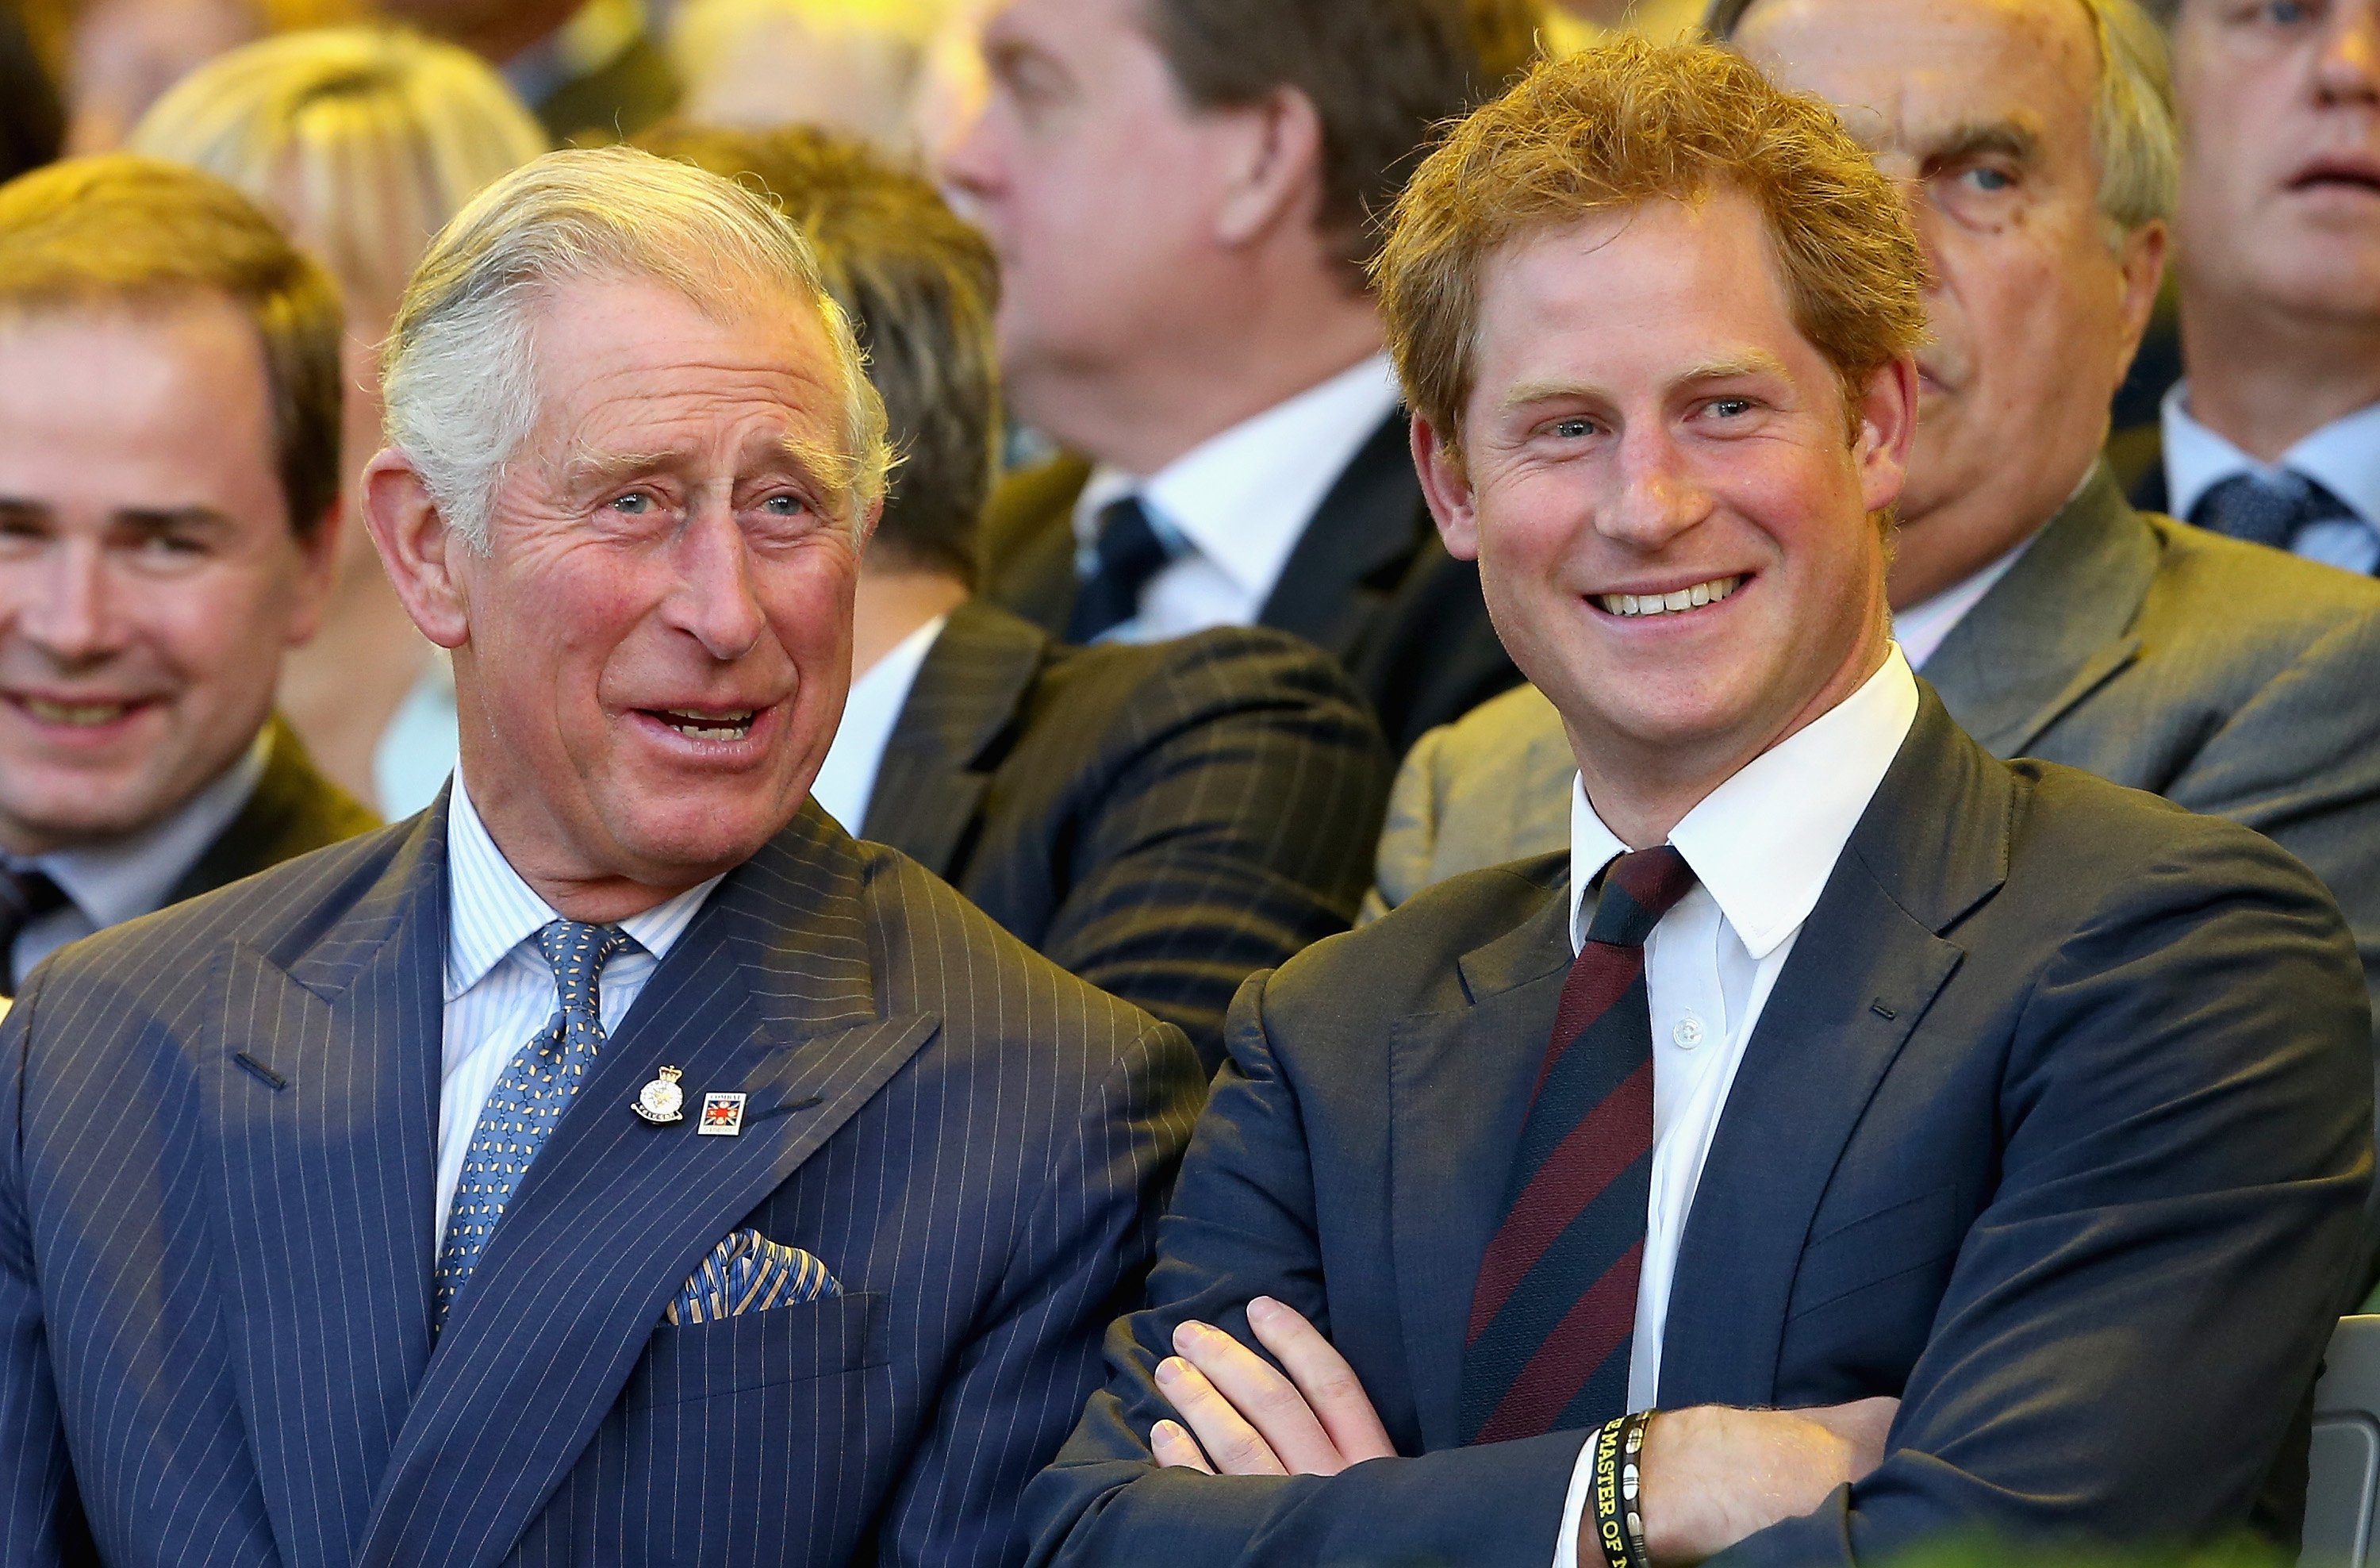 El rey Charles III y el príncipe Harry se ríen durante la ceremonia de apertura de los Juegos Invictus el 10 de septiembre de 2014 en Londres, Inglaterra. | Foto: Getty Images